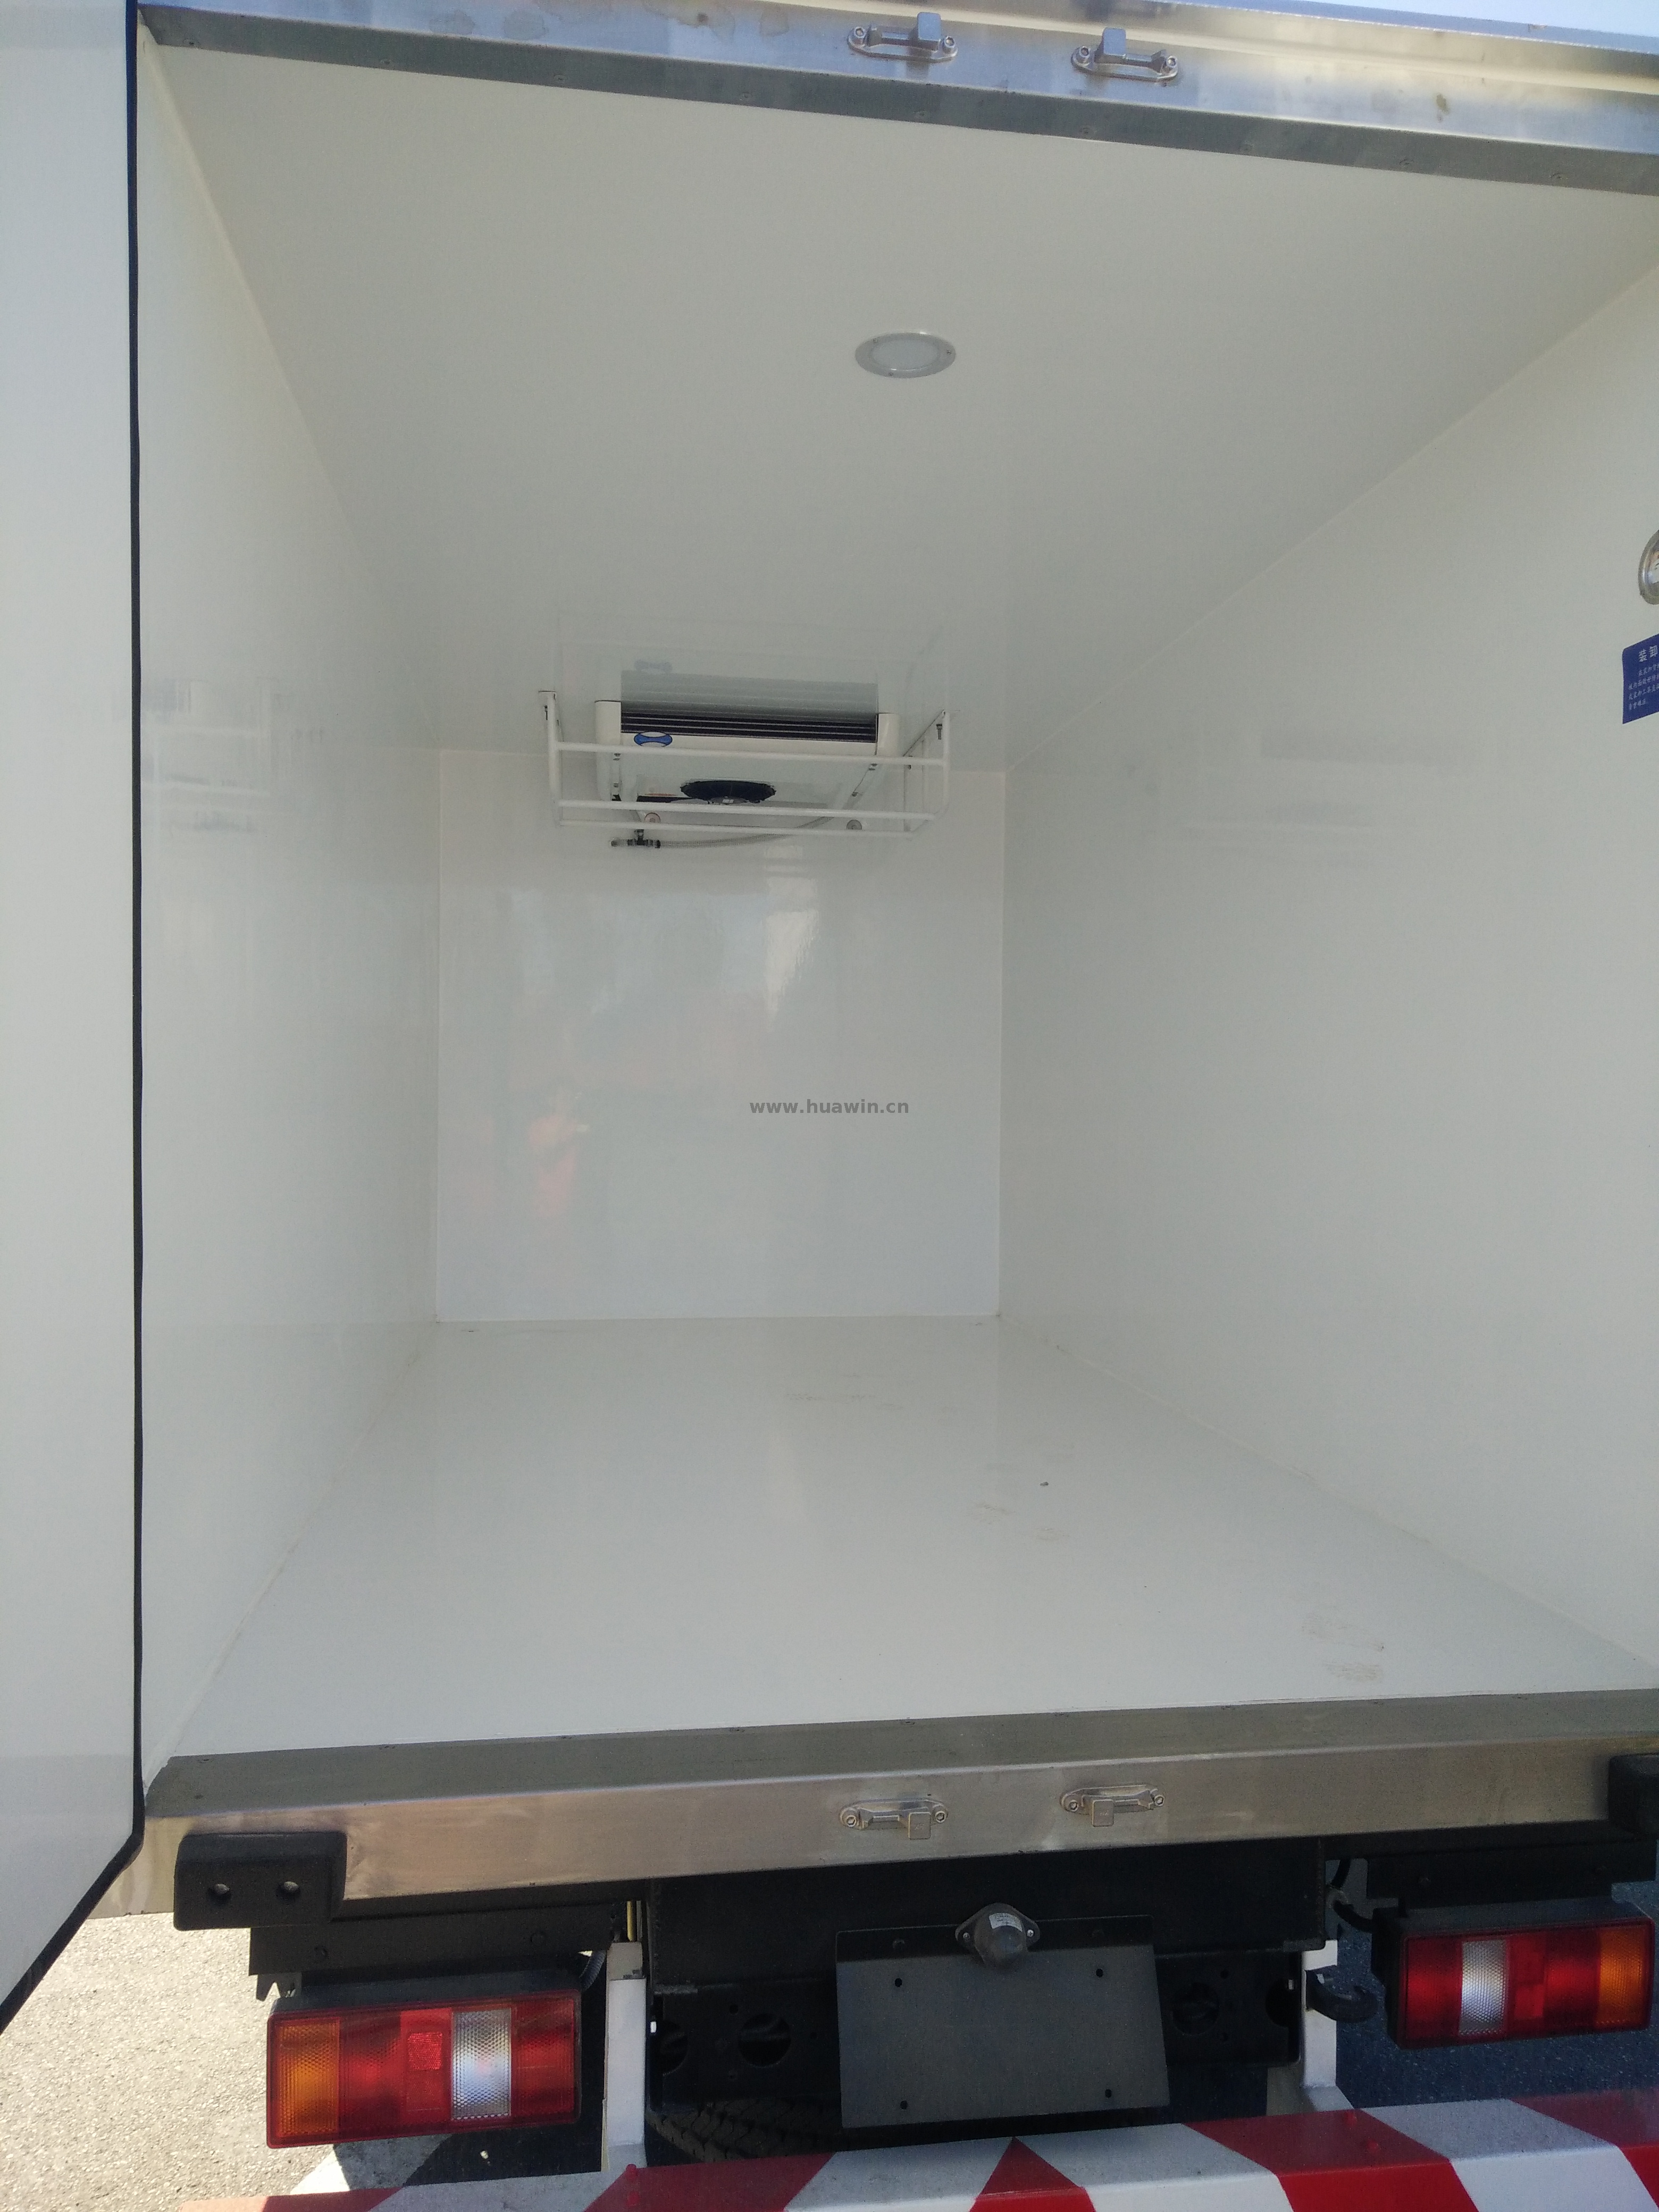 SINOTRUK HOWO 4x2 Refrigerator Truck-5Ton